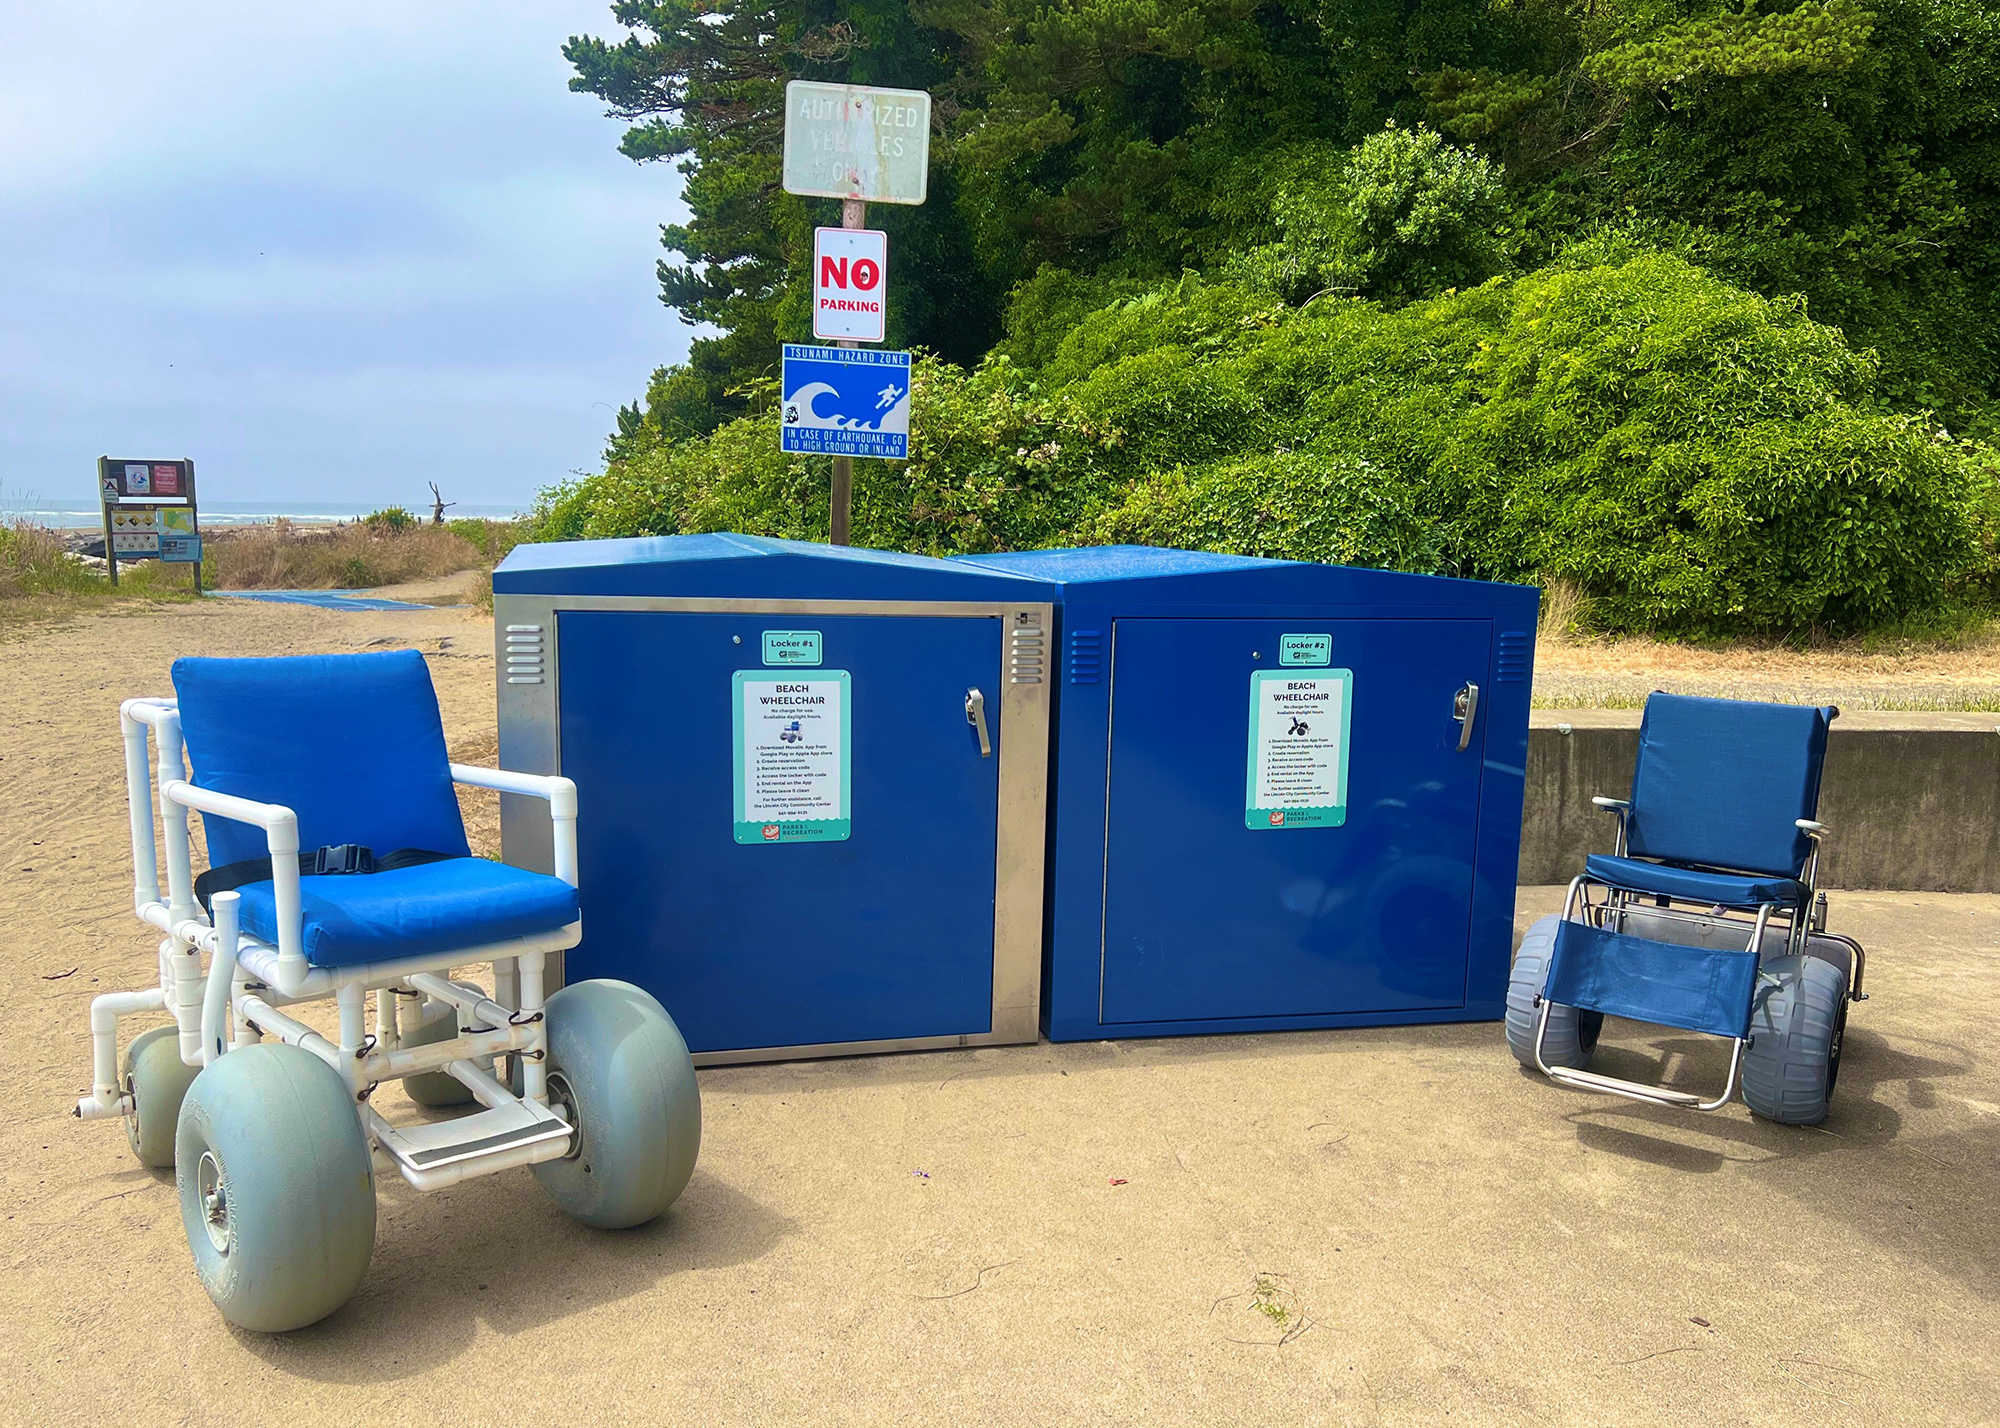 Beach Wheelchairs and Lockers